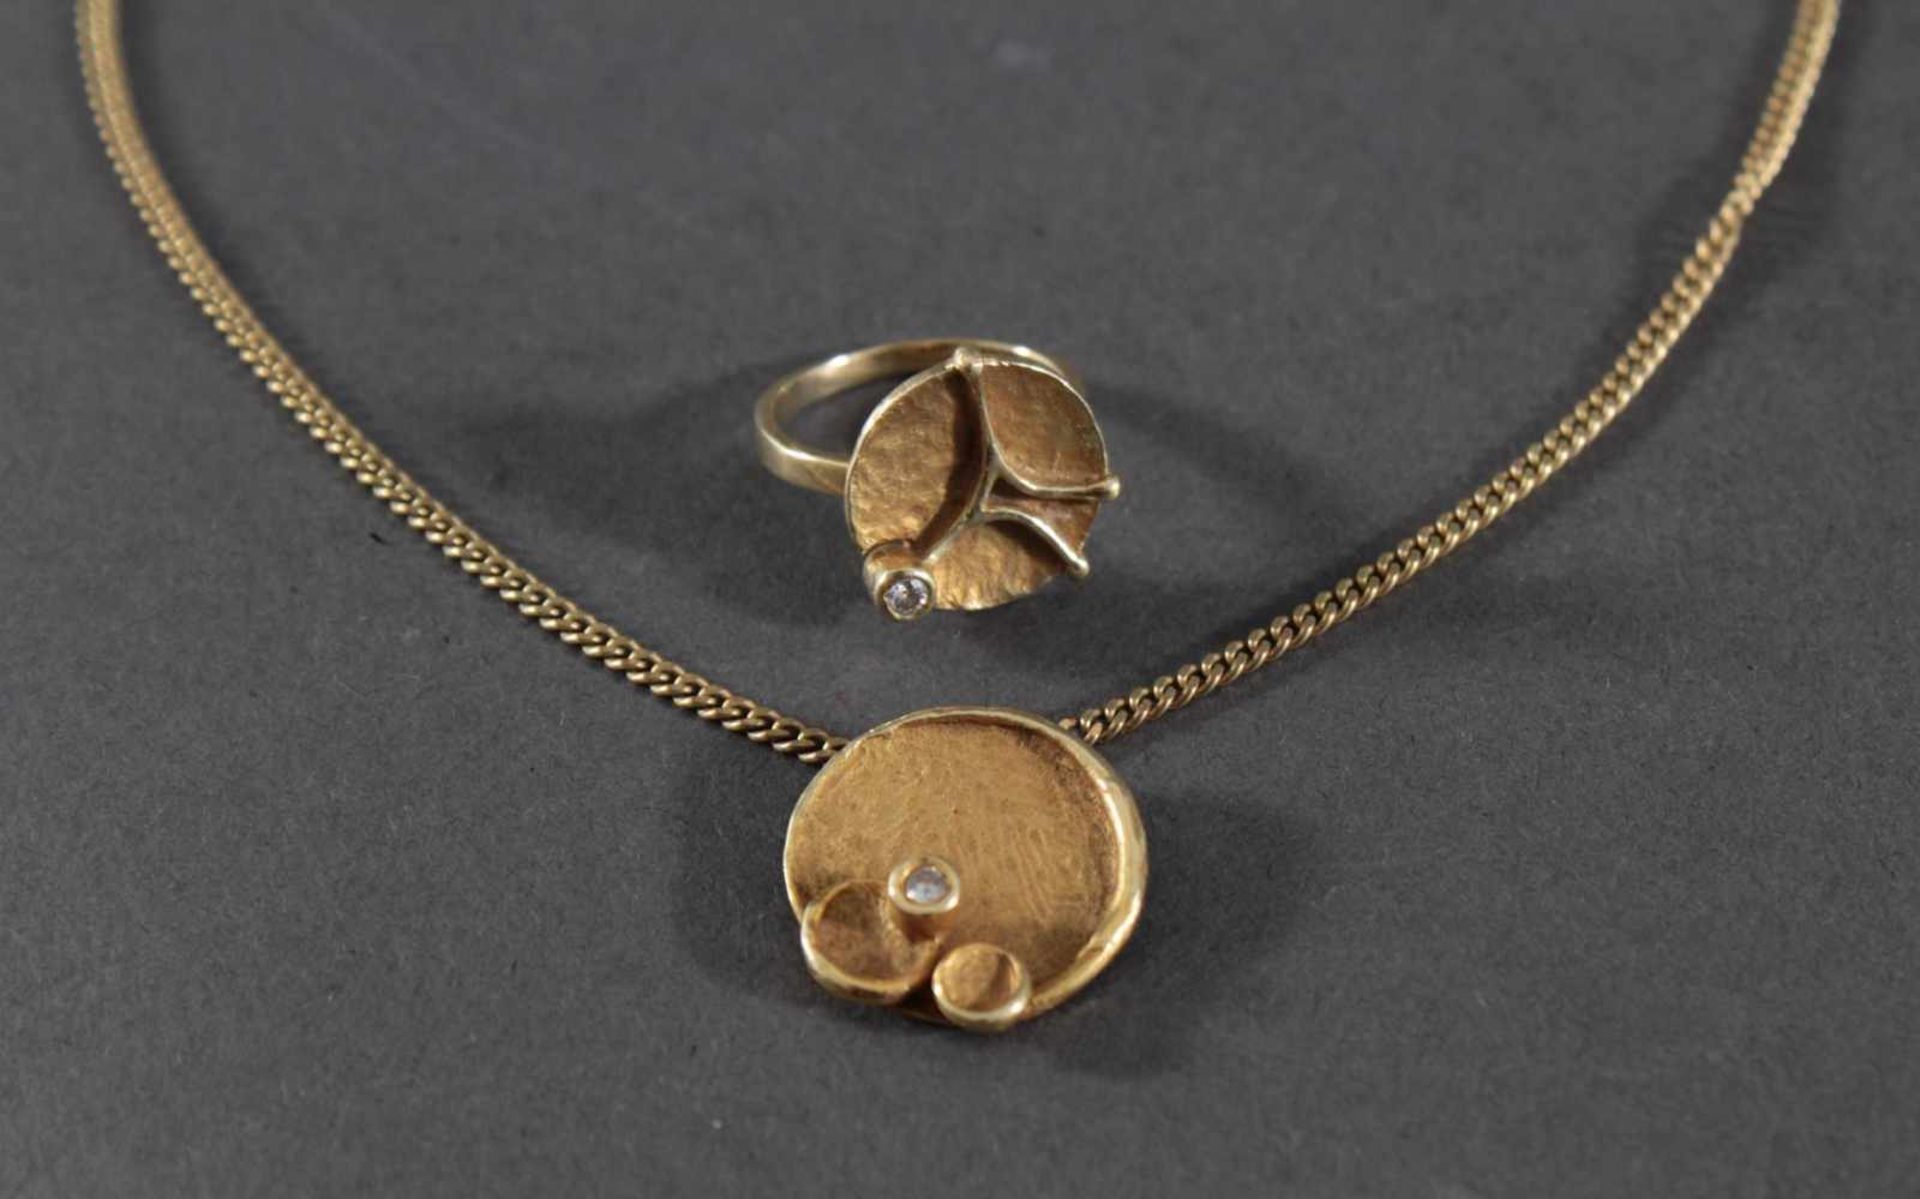 Halskette mit Anhänger und Ring mit Diamantbesatz, 8 und 14 Karat GelbgoldHalskette aus 8 Karat, ca. - Bild 2 aus 2